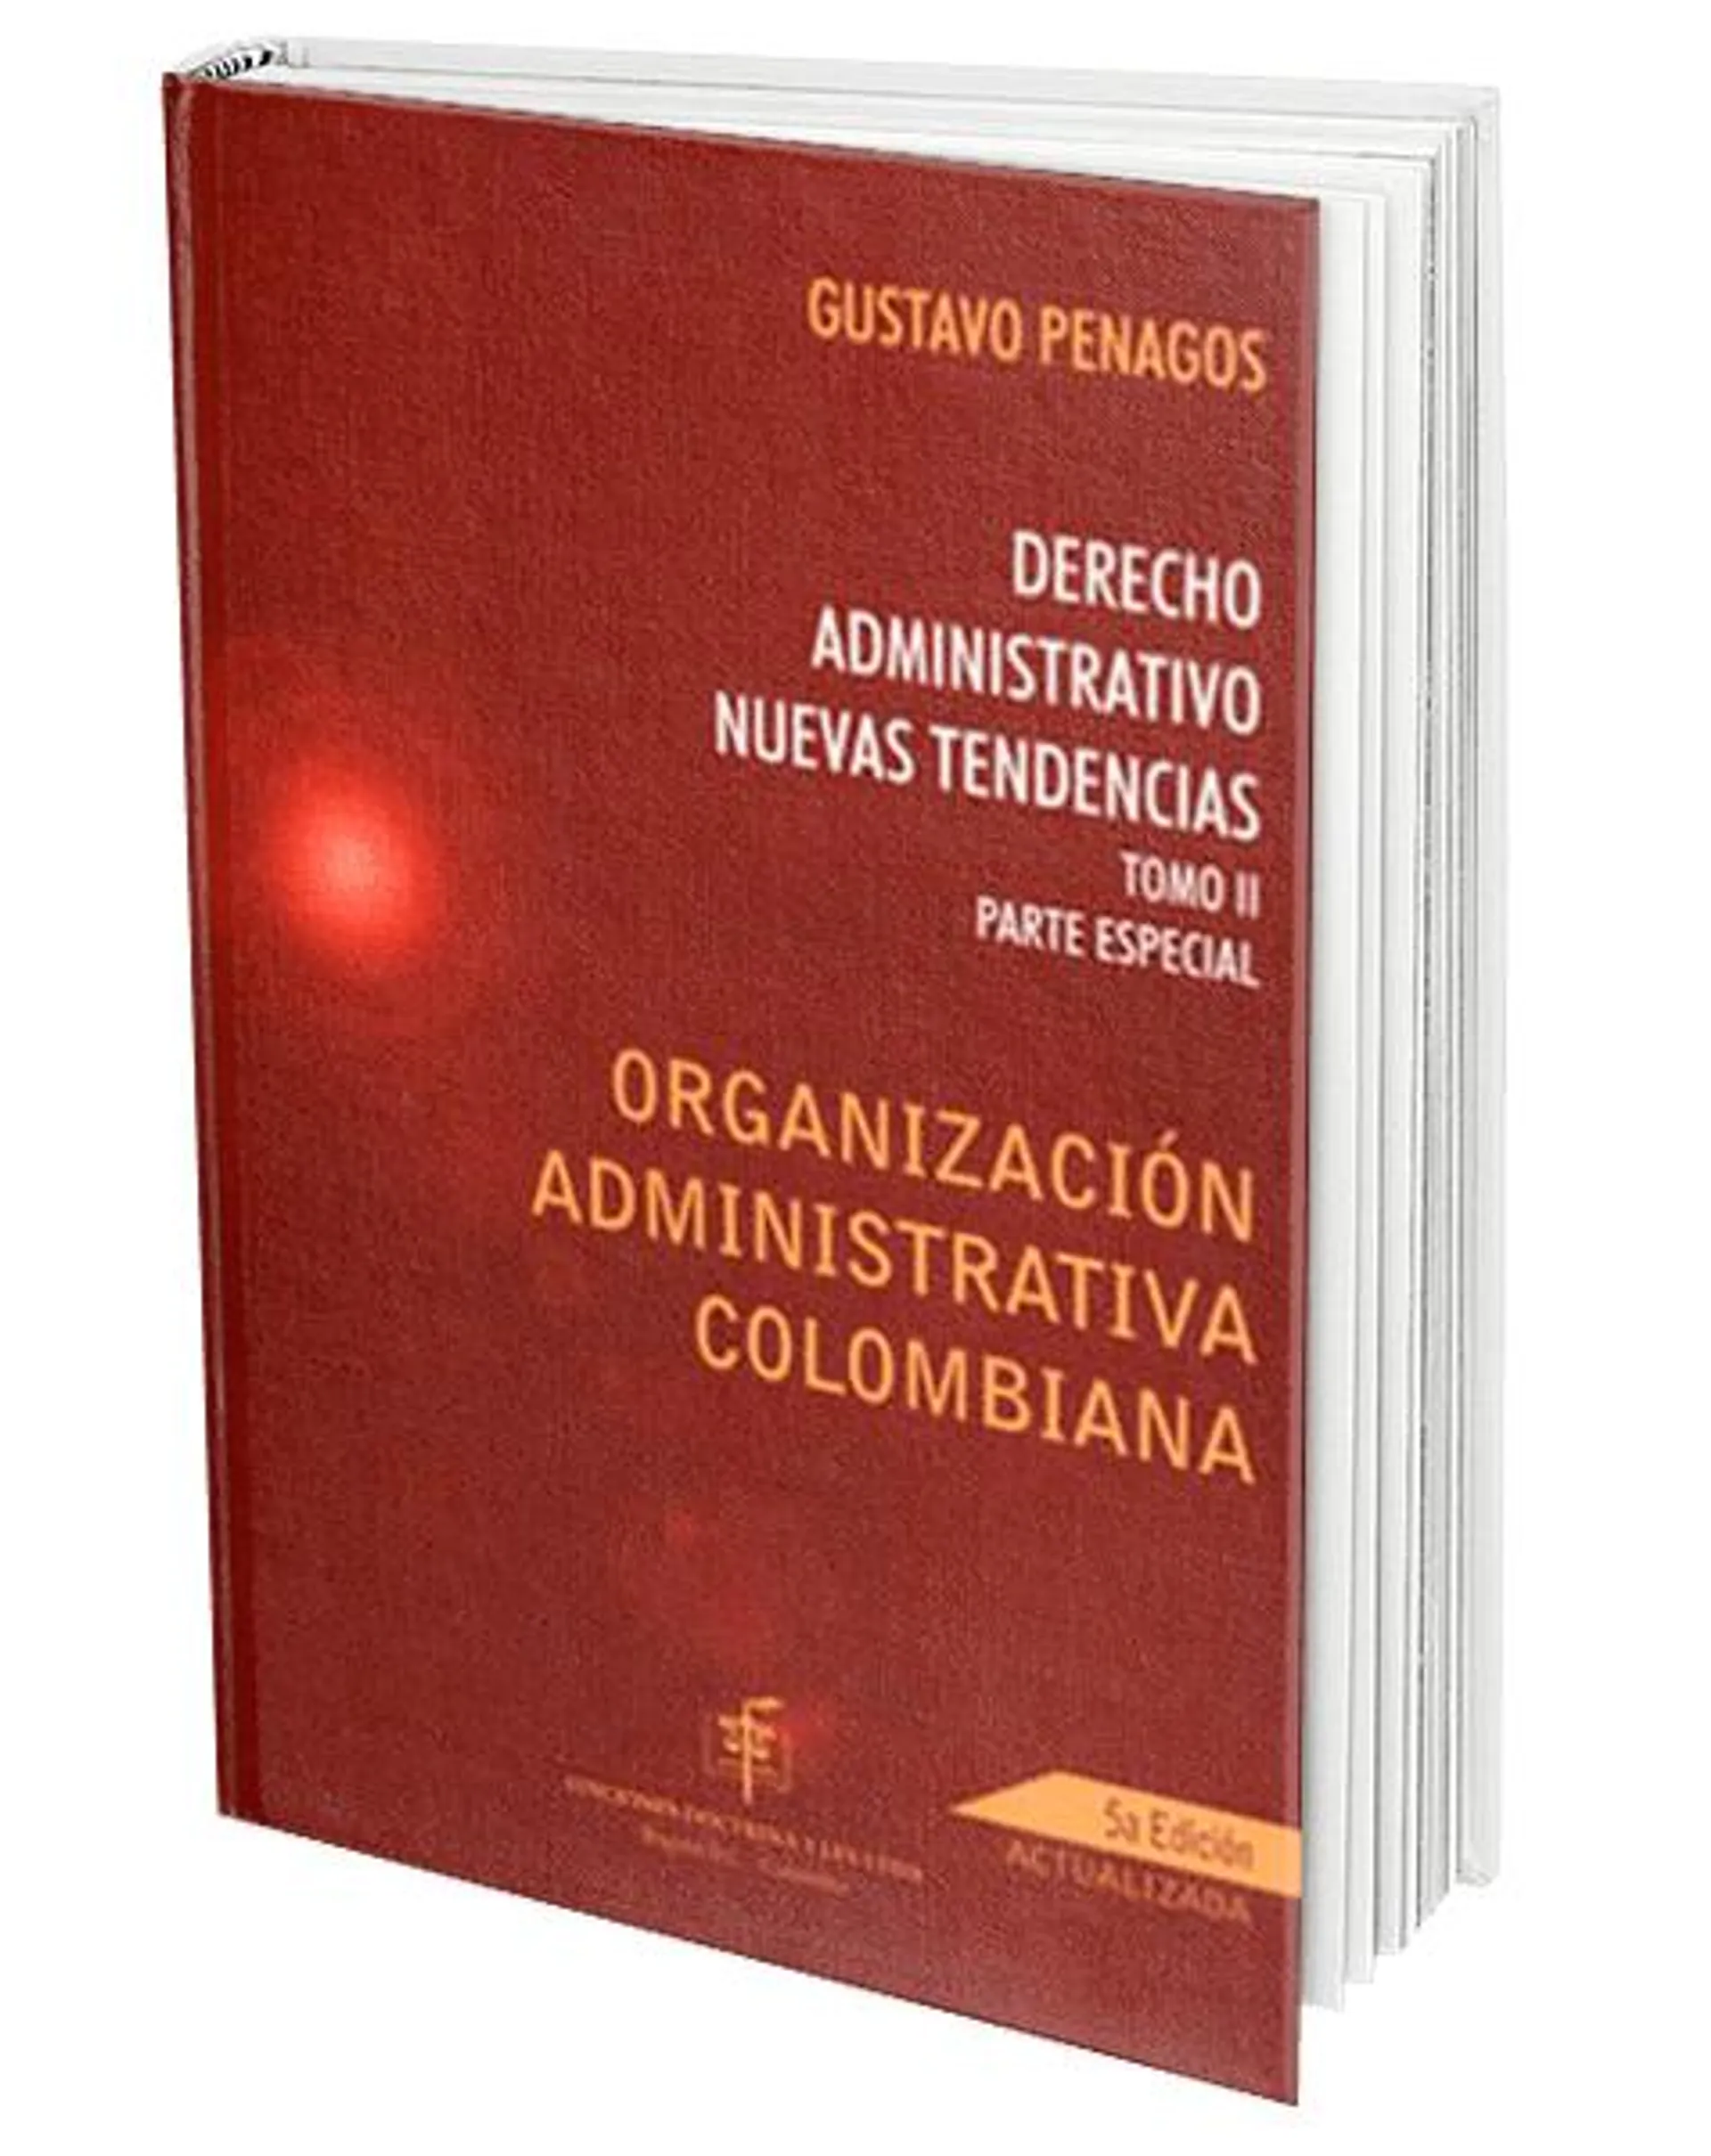 Derecho Administrativo. Nuevas Tendencias. Tomo II Parte Especial Organización Administrativa Colombiana